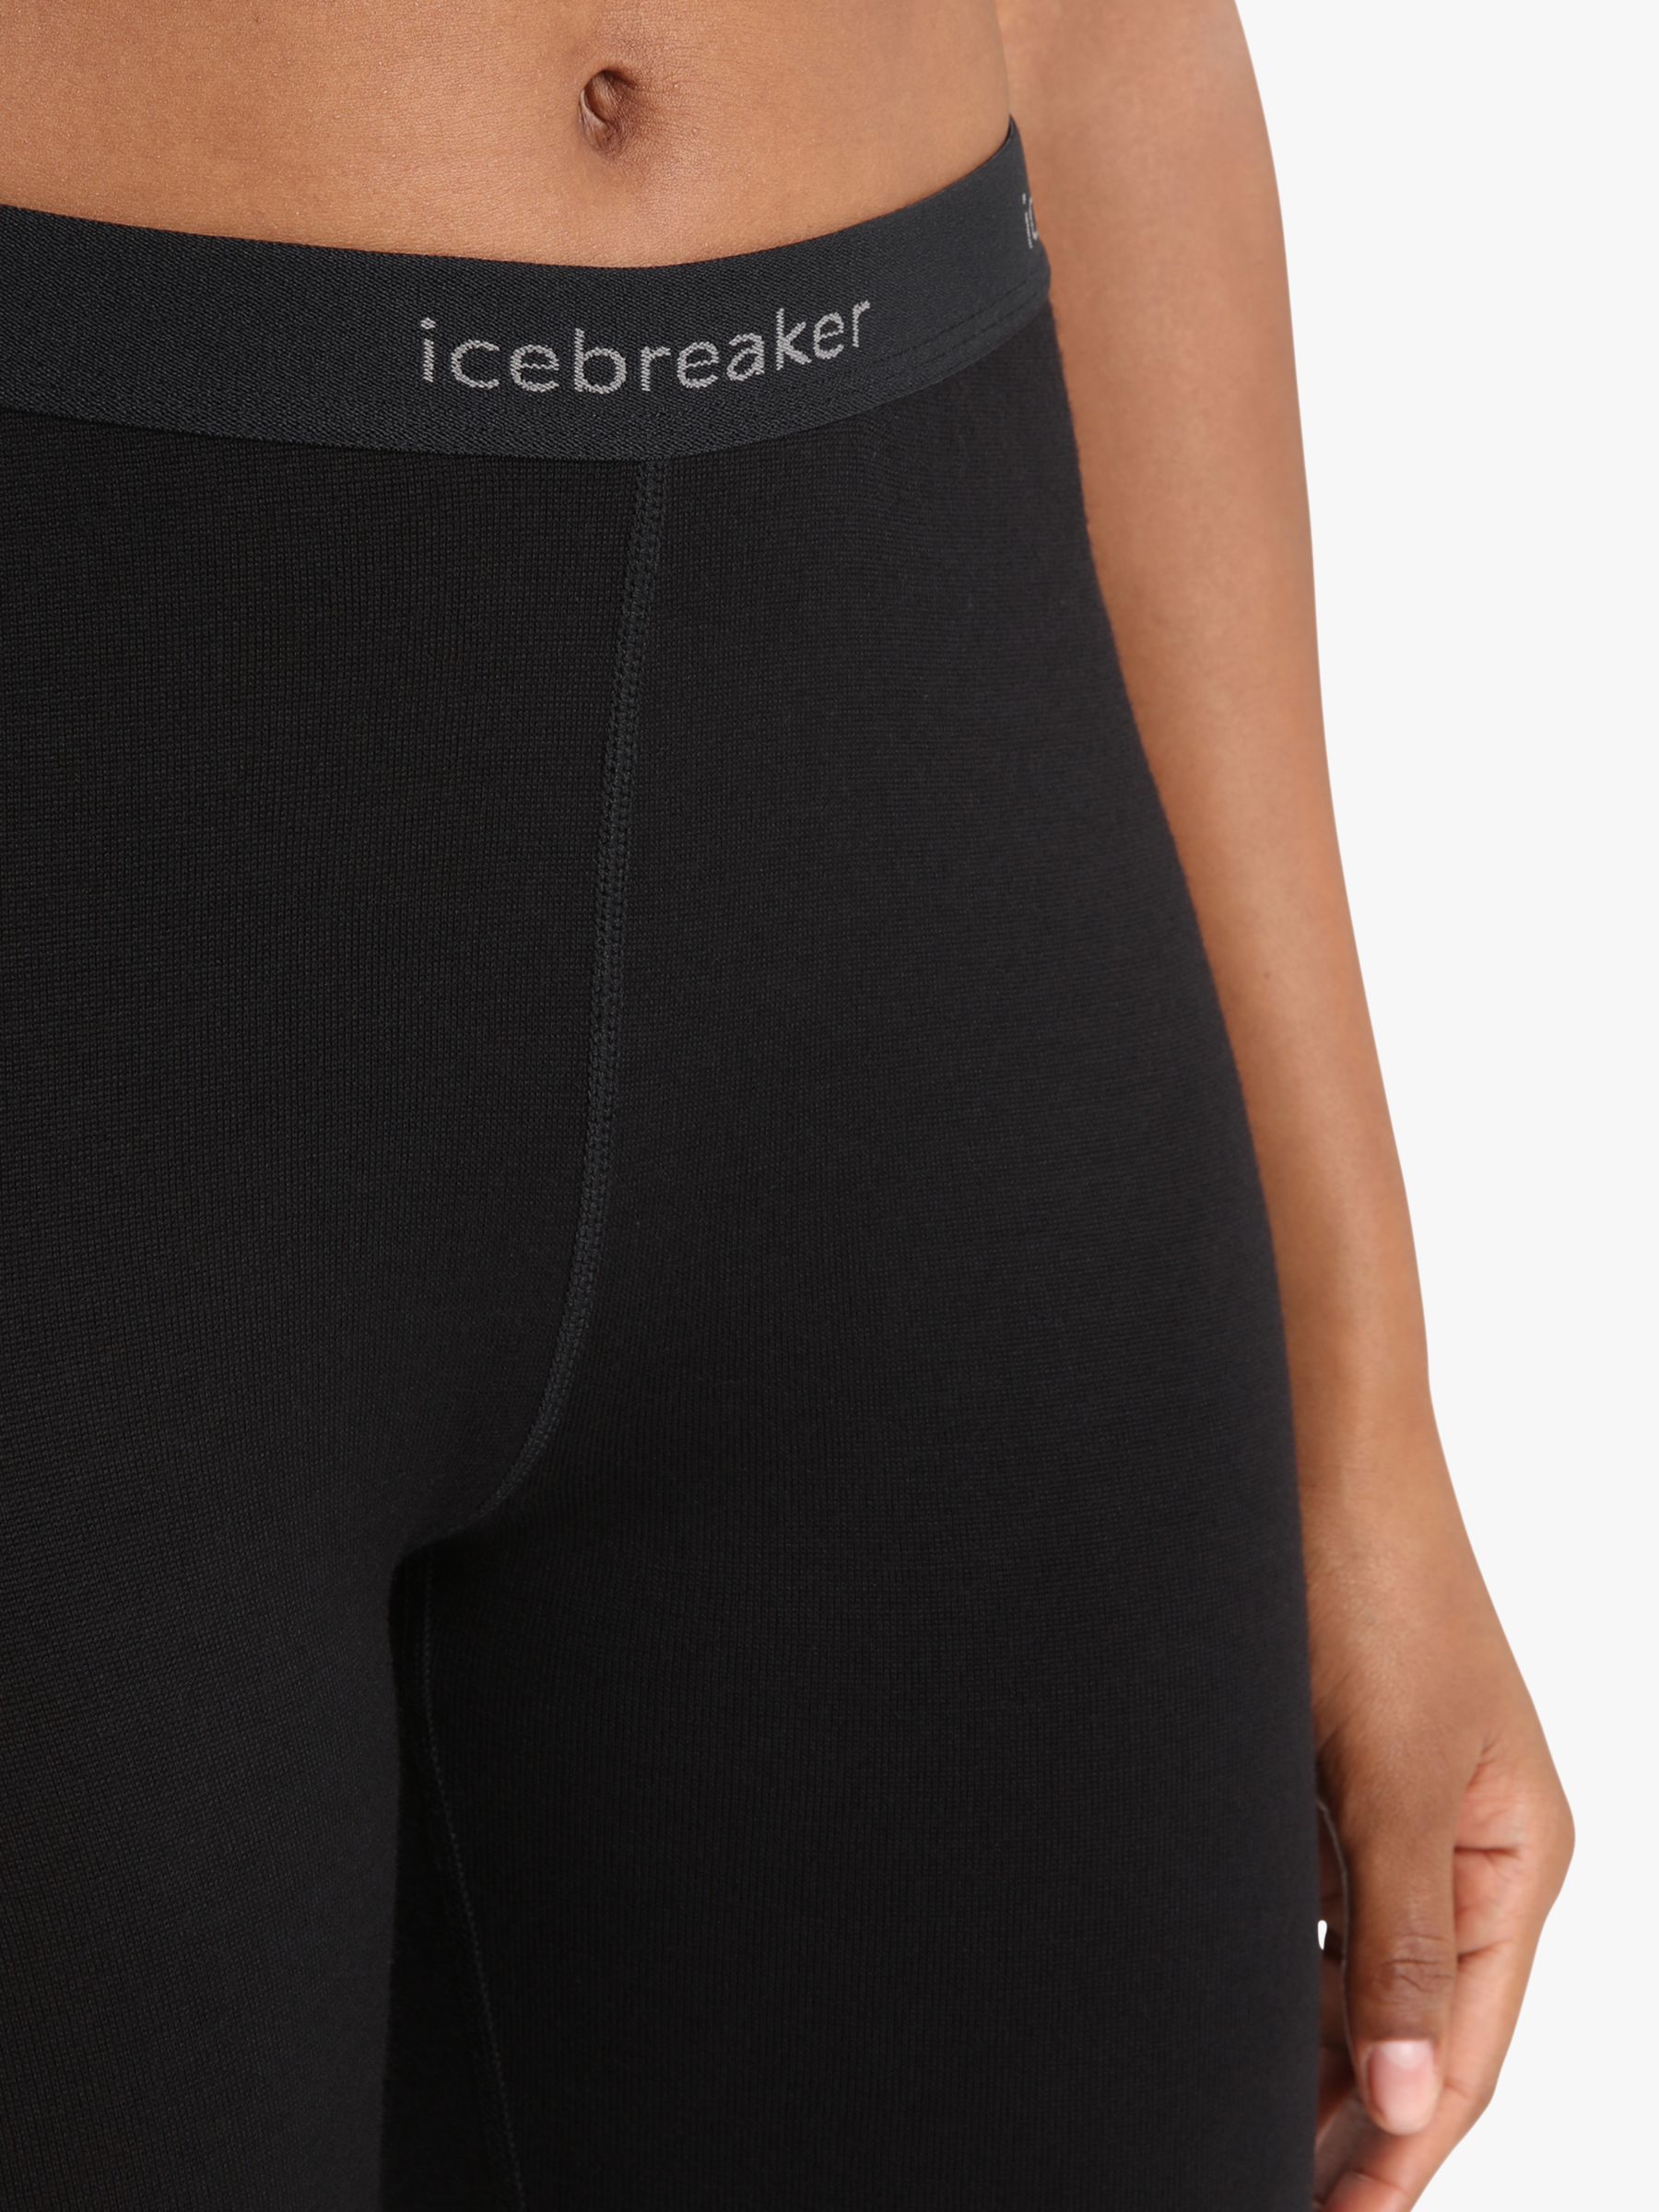 Icebreaker 260 Tech Wool Leggings, Black, XS